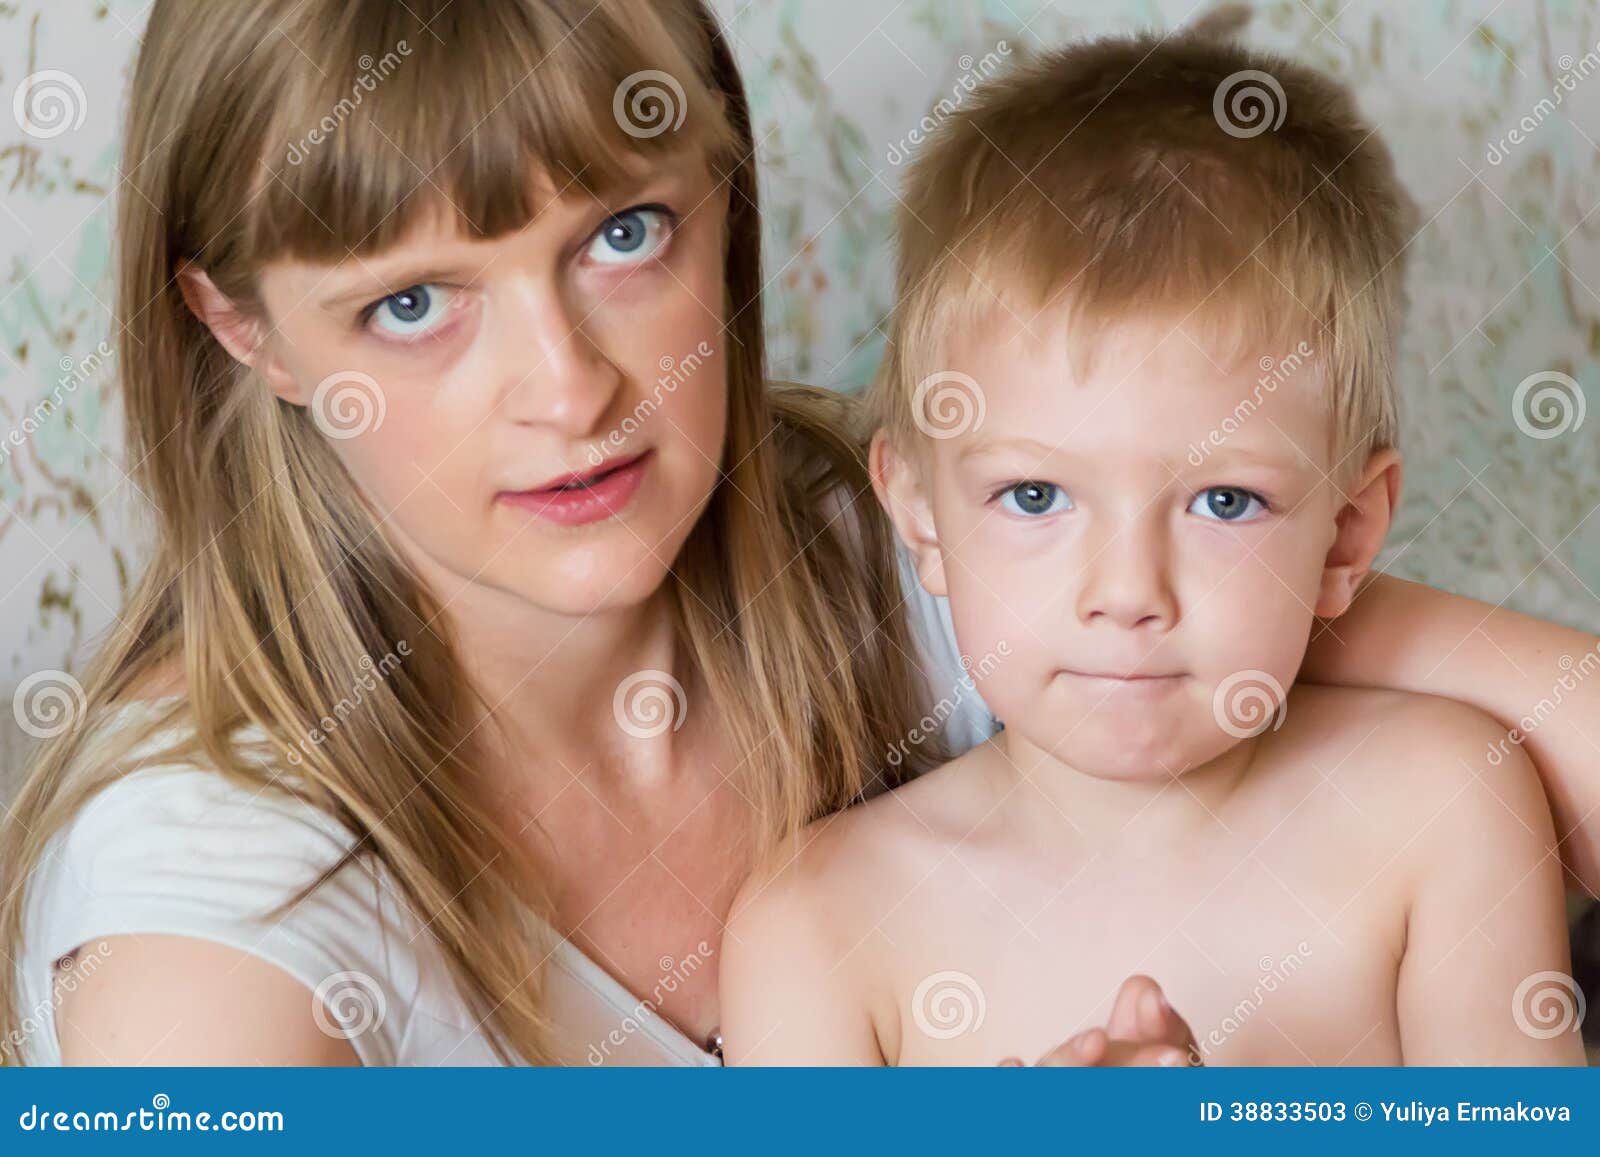 порно инцест мать трахает малолетнего сына фото 21